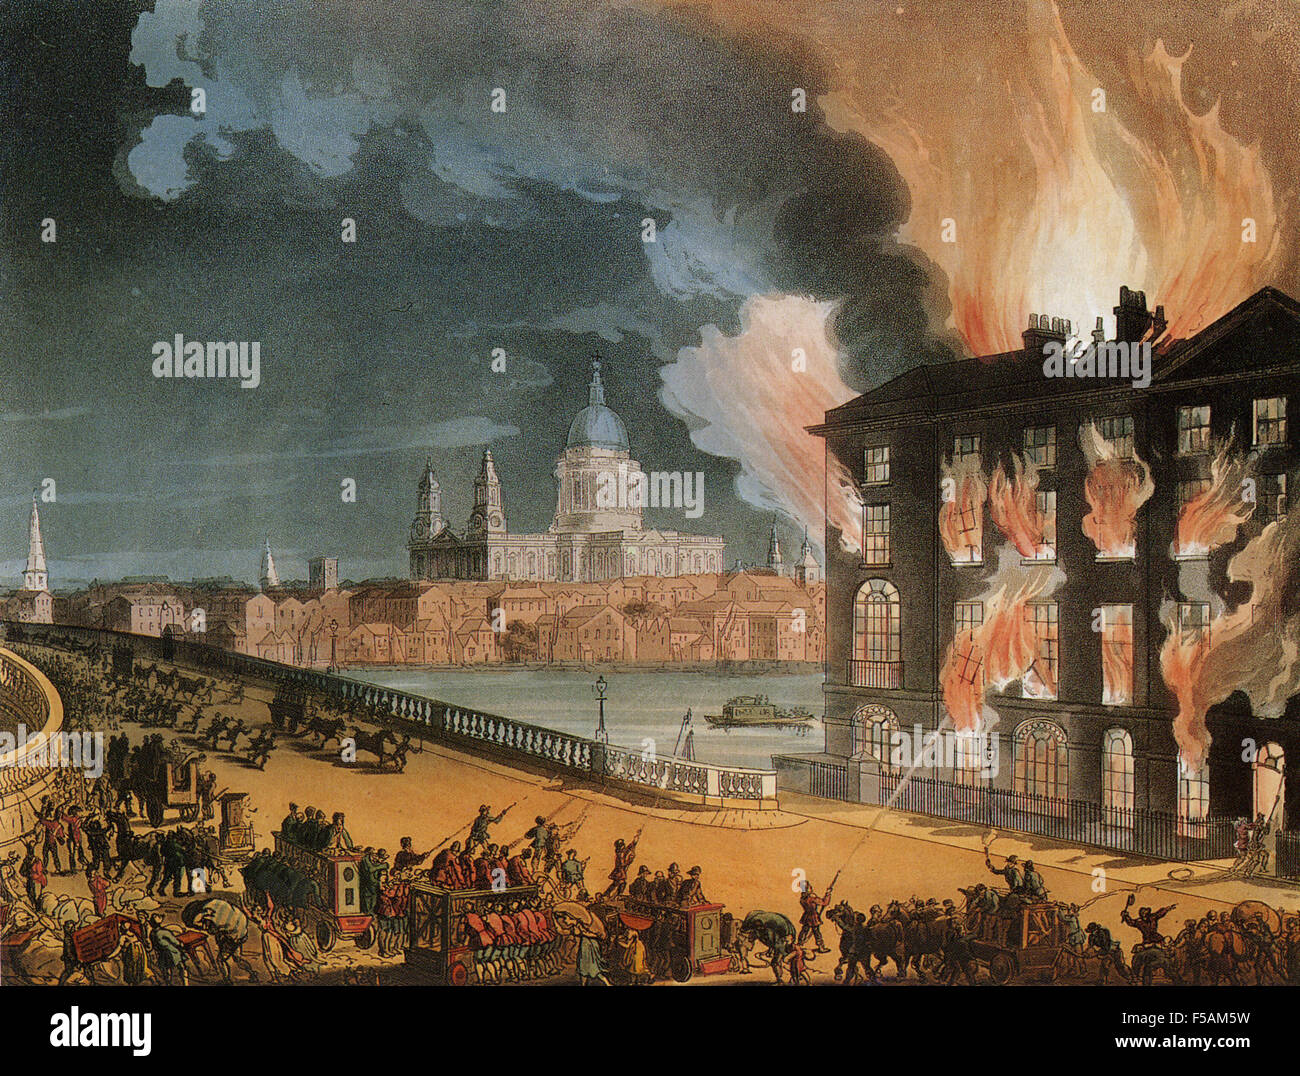 Feuer in ALBION MILLS 3. März 1791. Drucken Sie vom "Mikrokosmos von London" veröffentlichte 1808 zeigen, das Feuer, das die Dampf betriebene Getreidemühle auf der Südseite der Blackfriars Bridge, London, gegenüber St Pauls Cathedral zerstört. Stockfoto